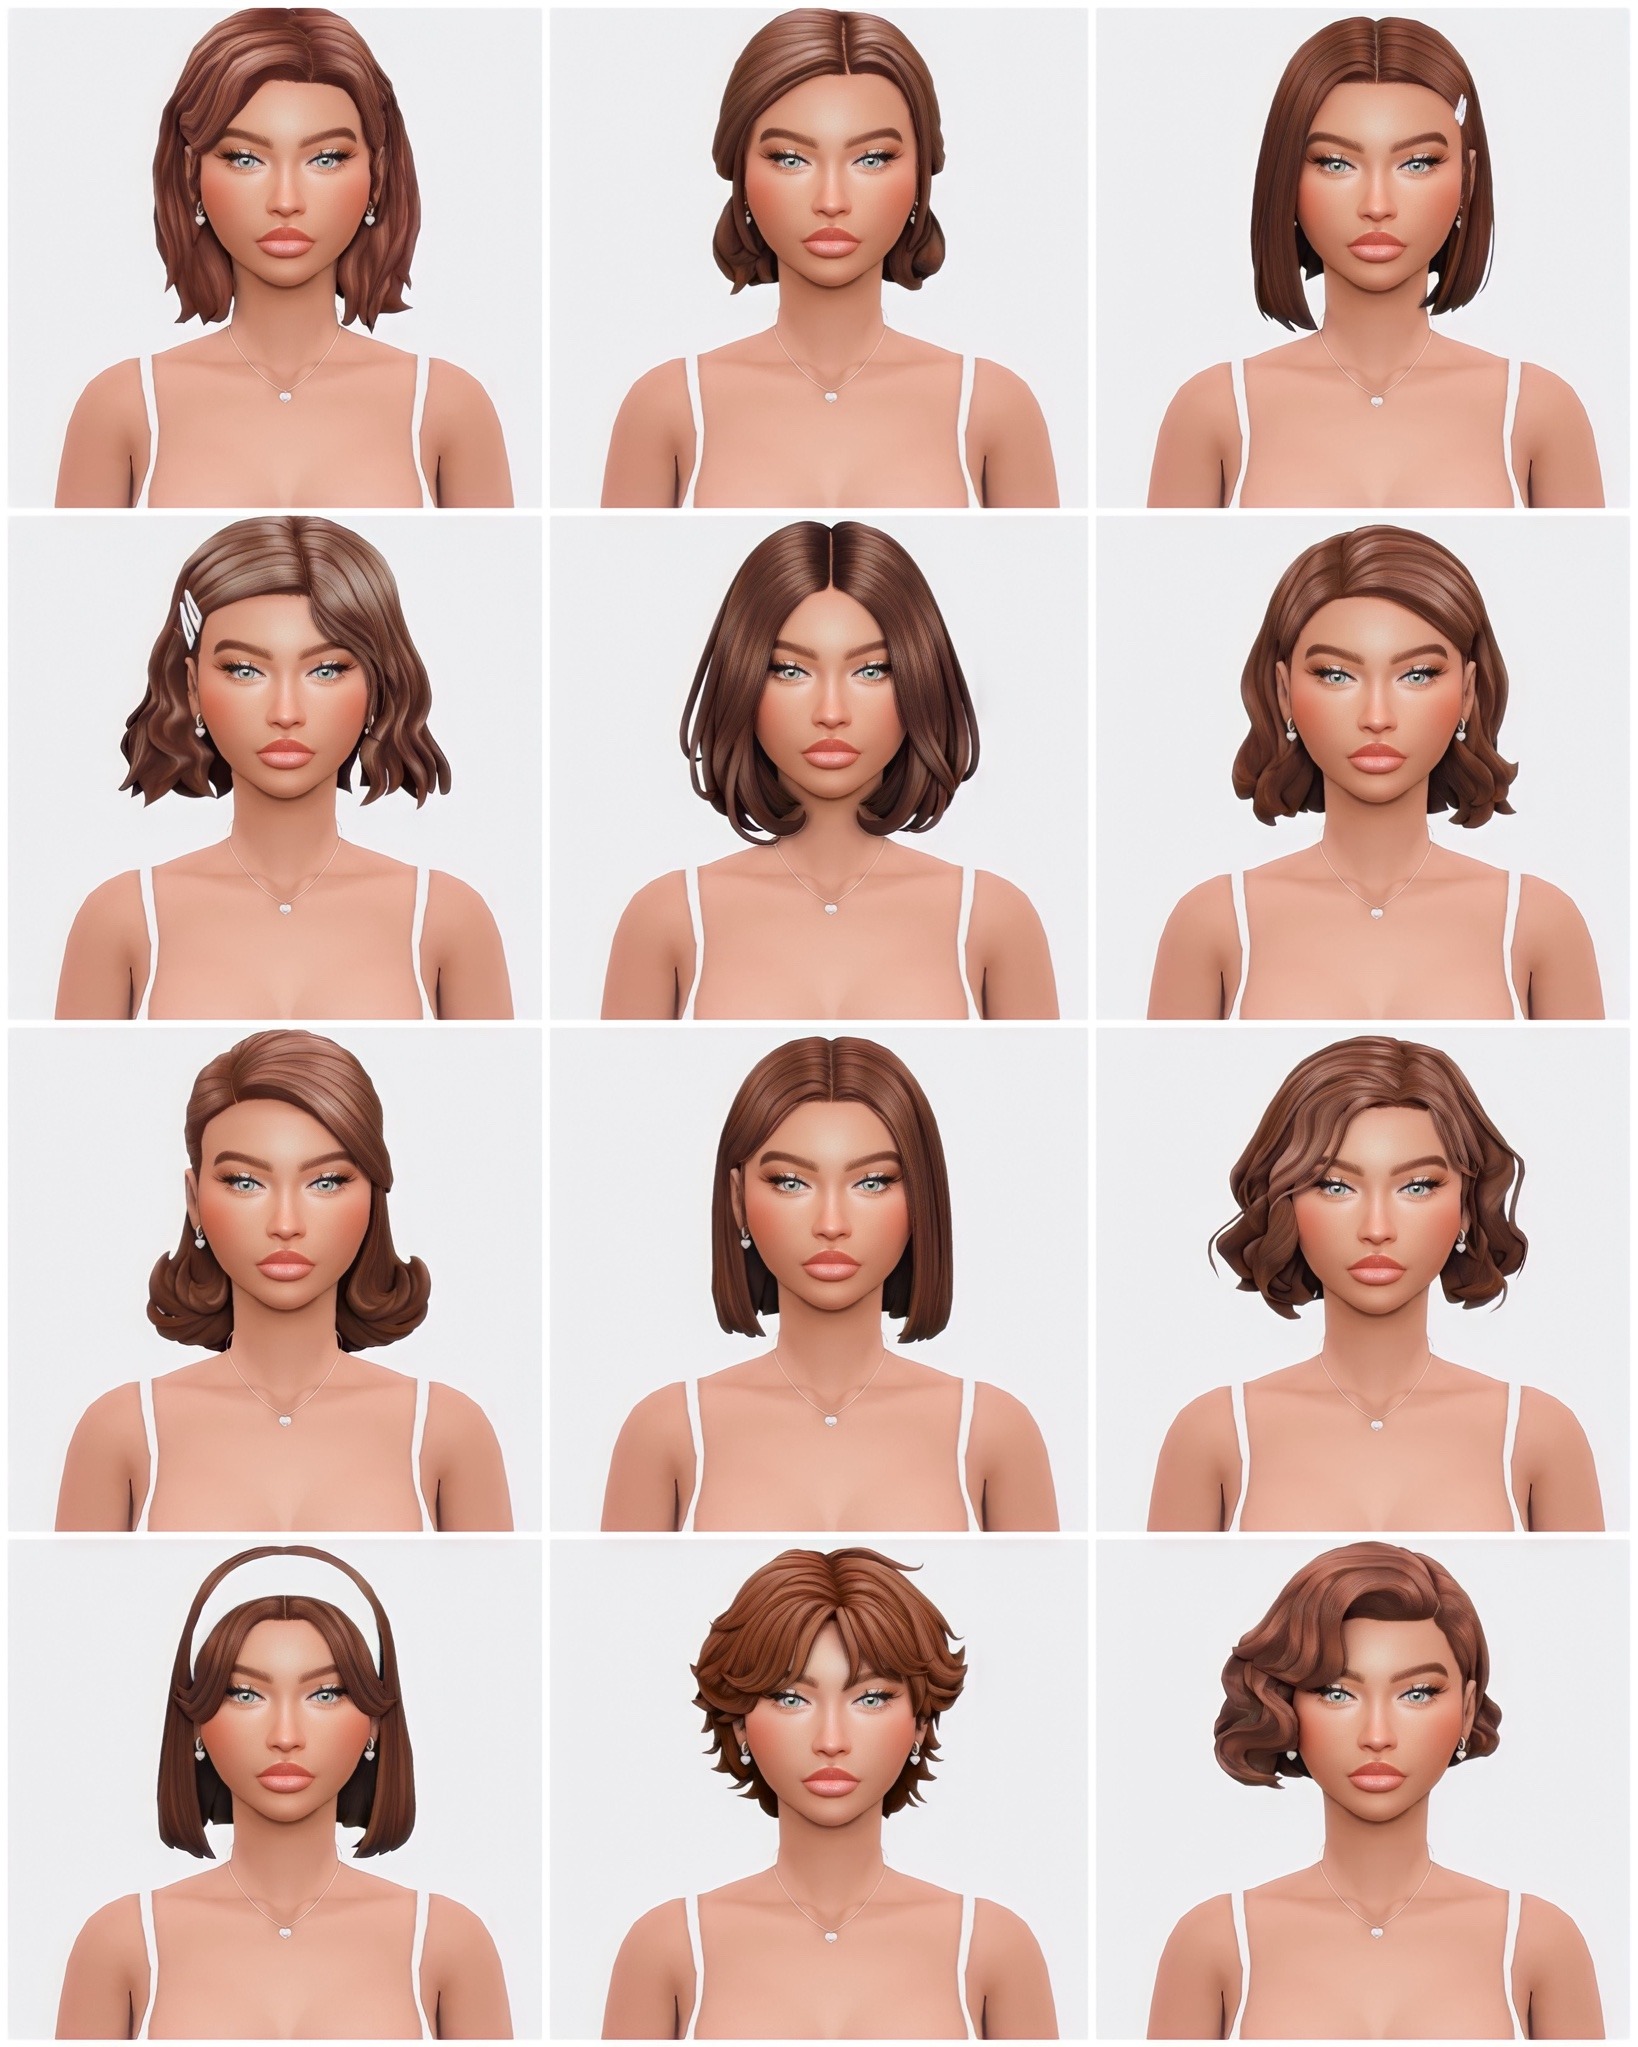 Stuart Era Hairstyles - Buzzard - The Sims 4 Create a Sim - CurseForge